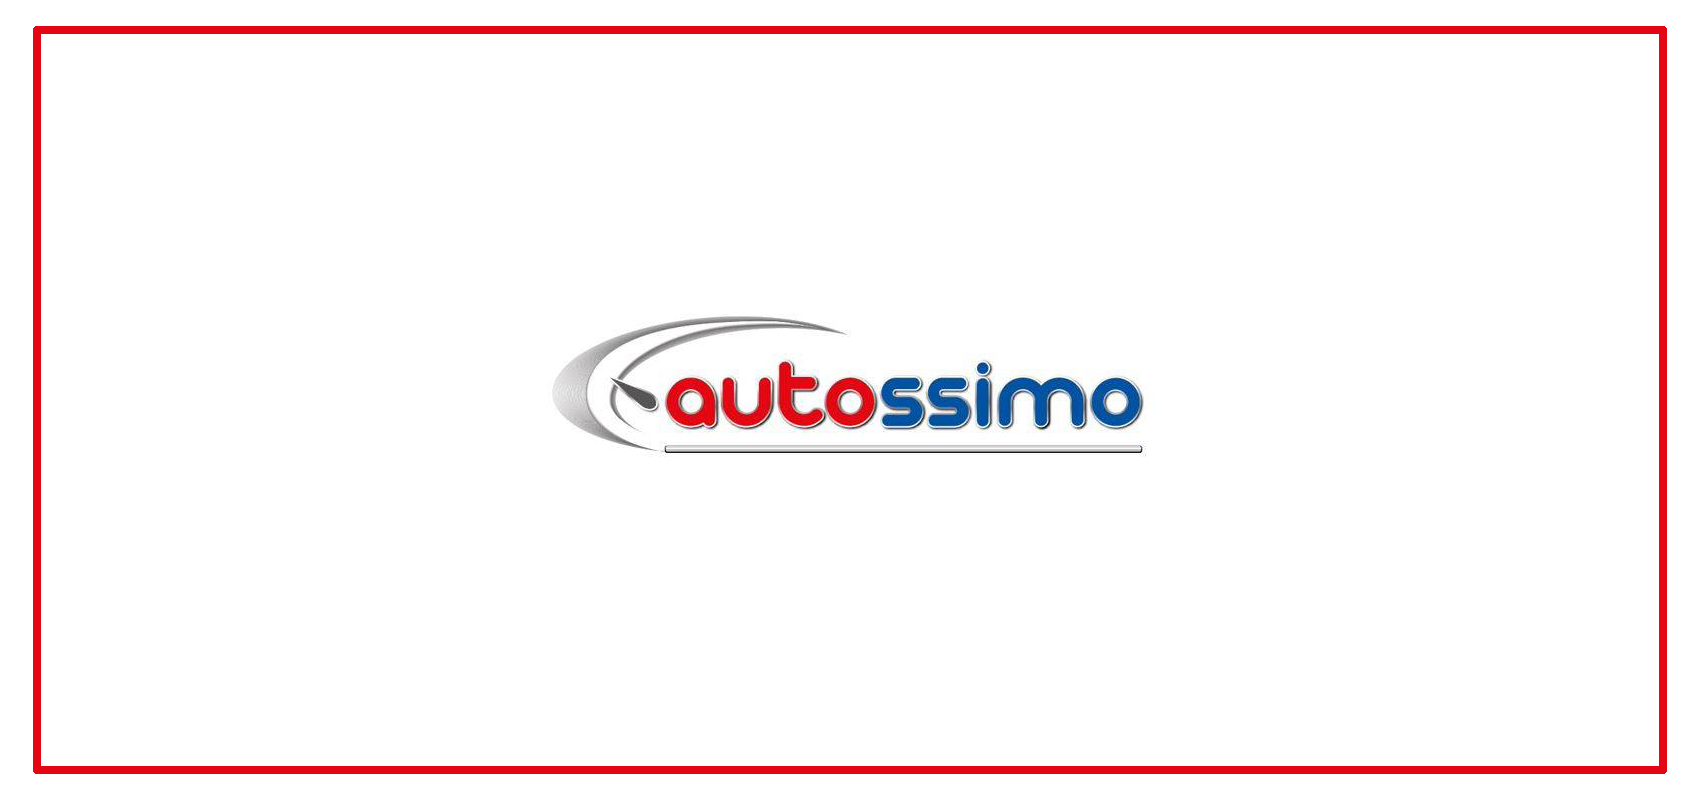 FAQ: Autossimo Public/Pro નો સંપર્ક કેવી રીતે કરવો?